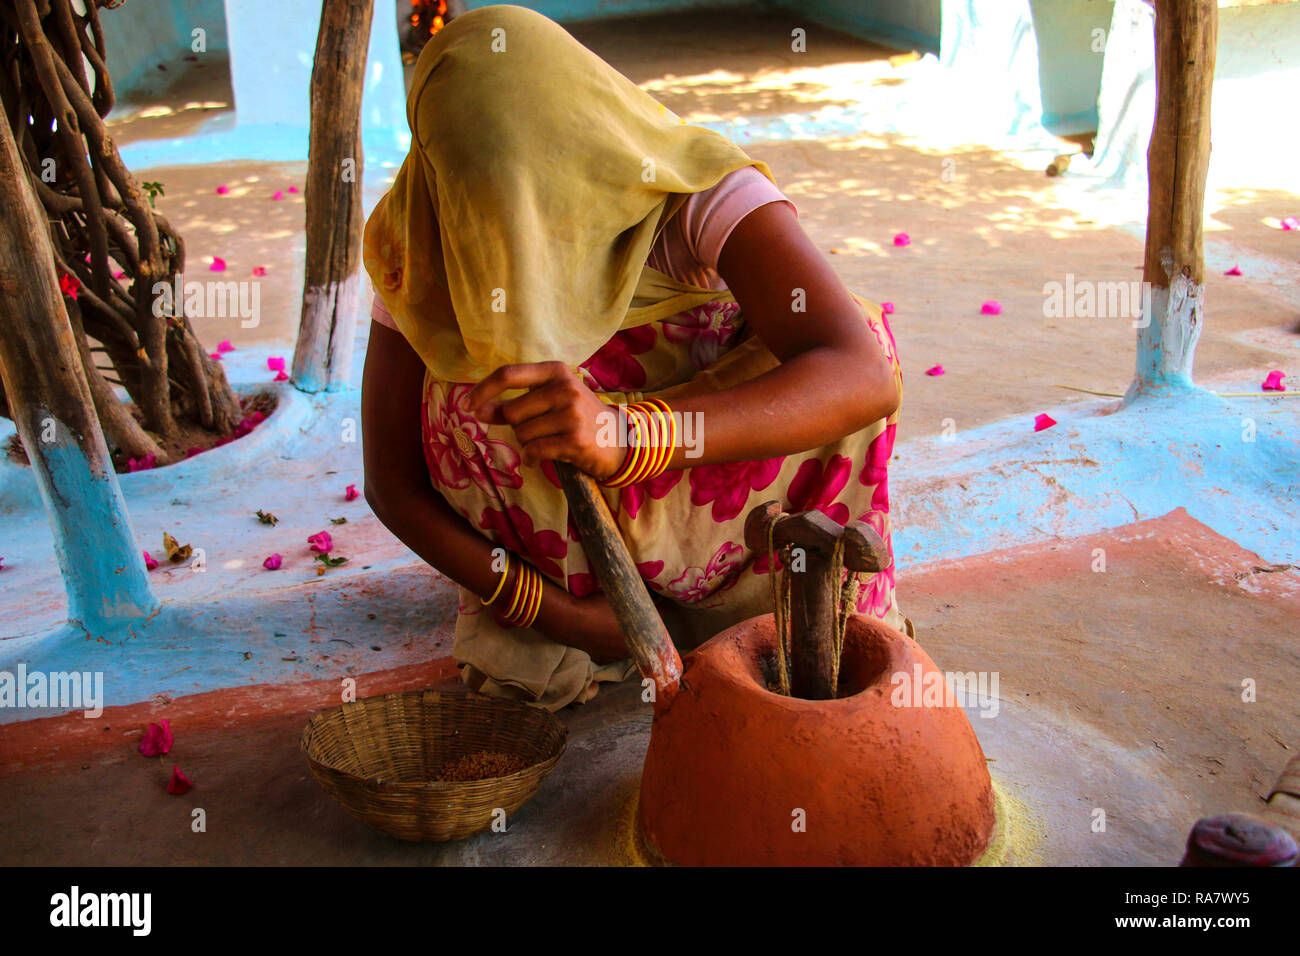 Façon traditionnelle de moudre le grain dans un village rural, près de Khajuraho, Inde Banque D'Images